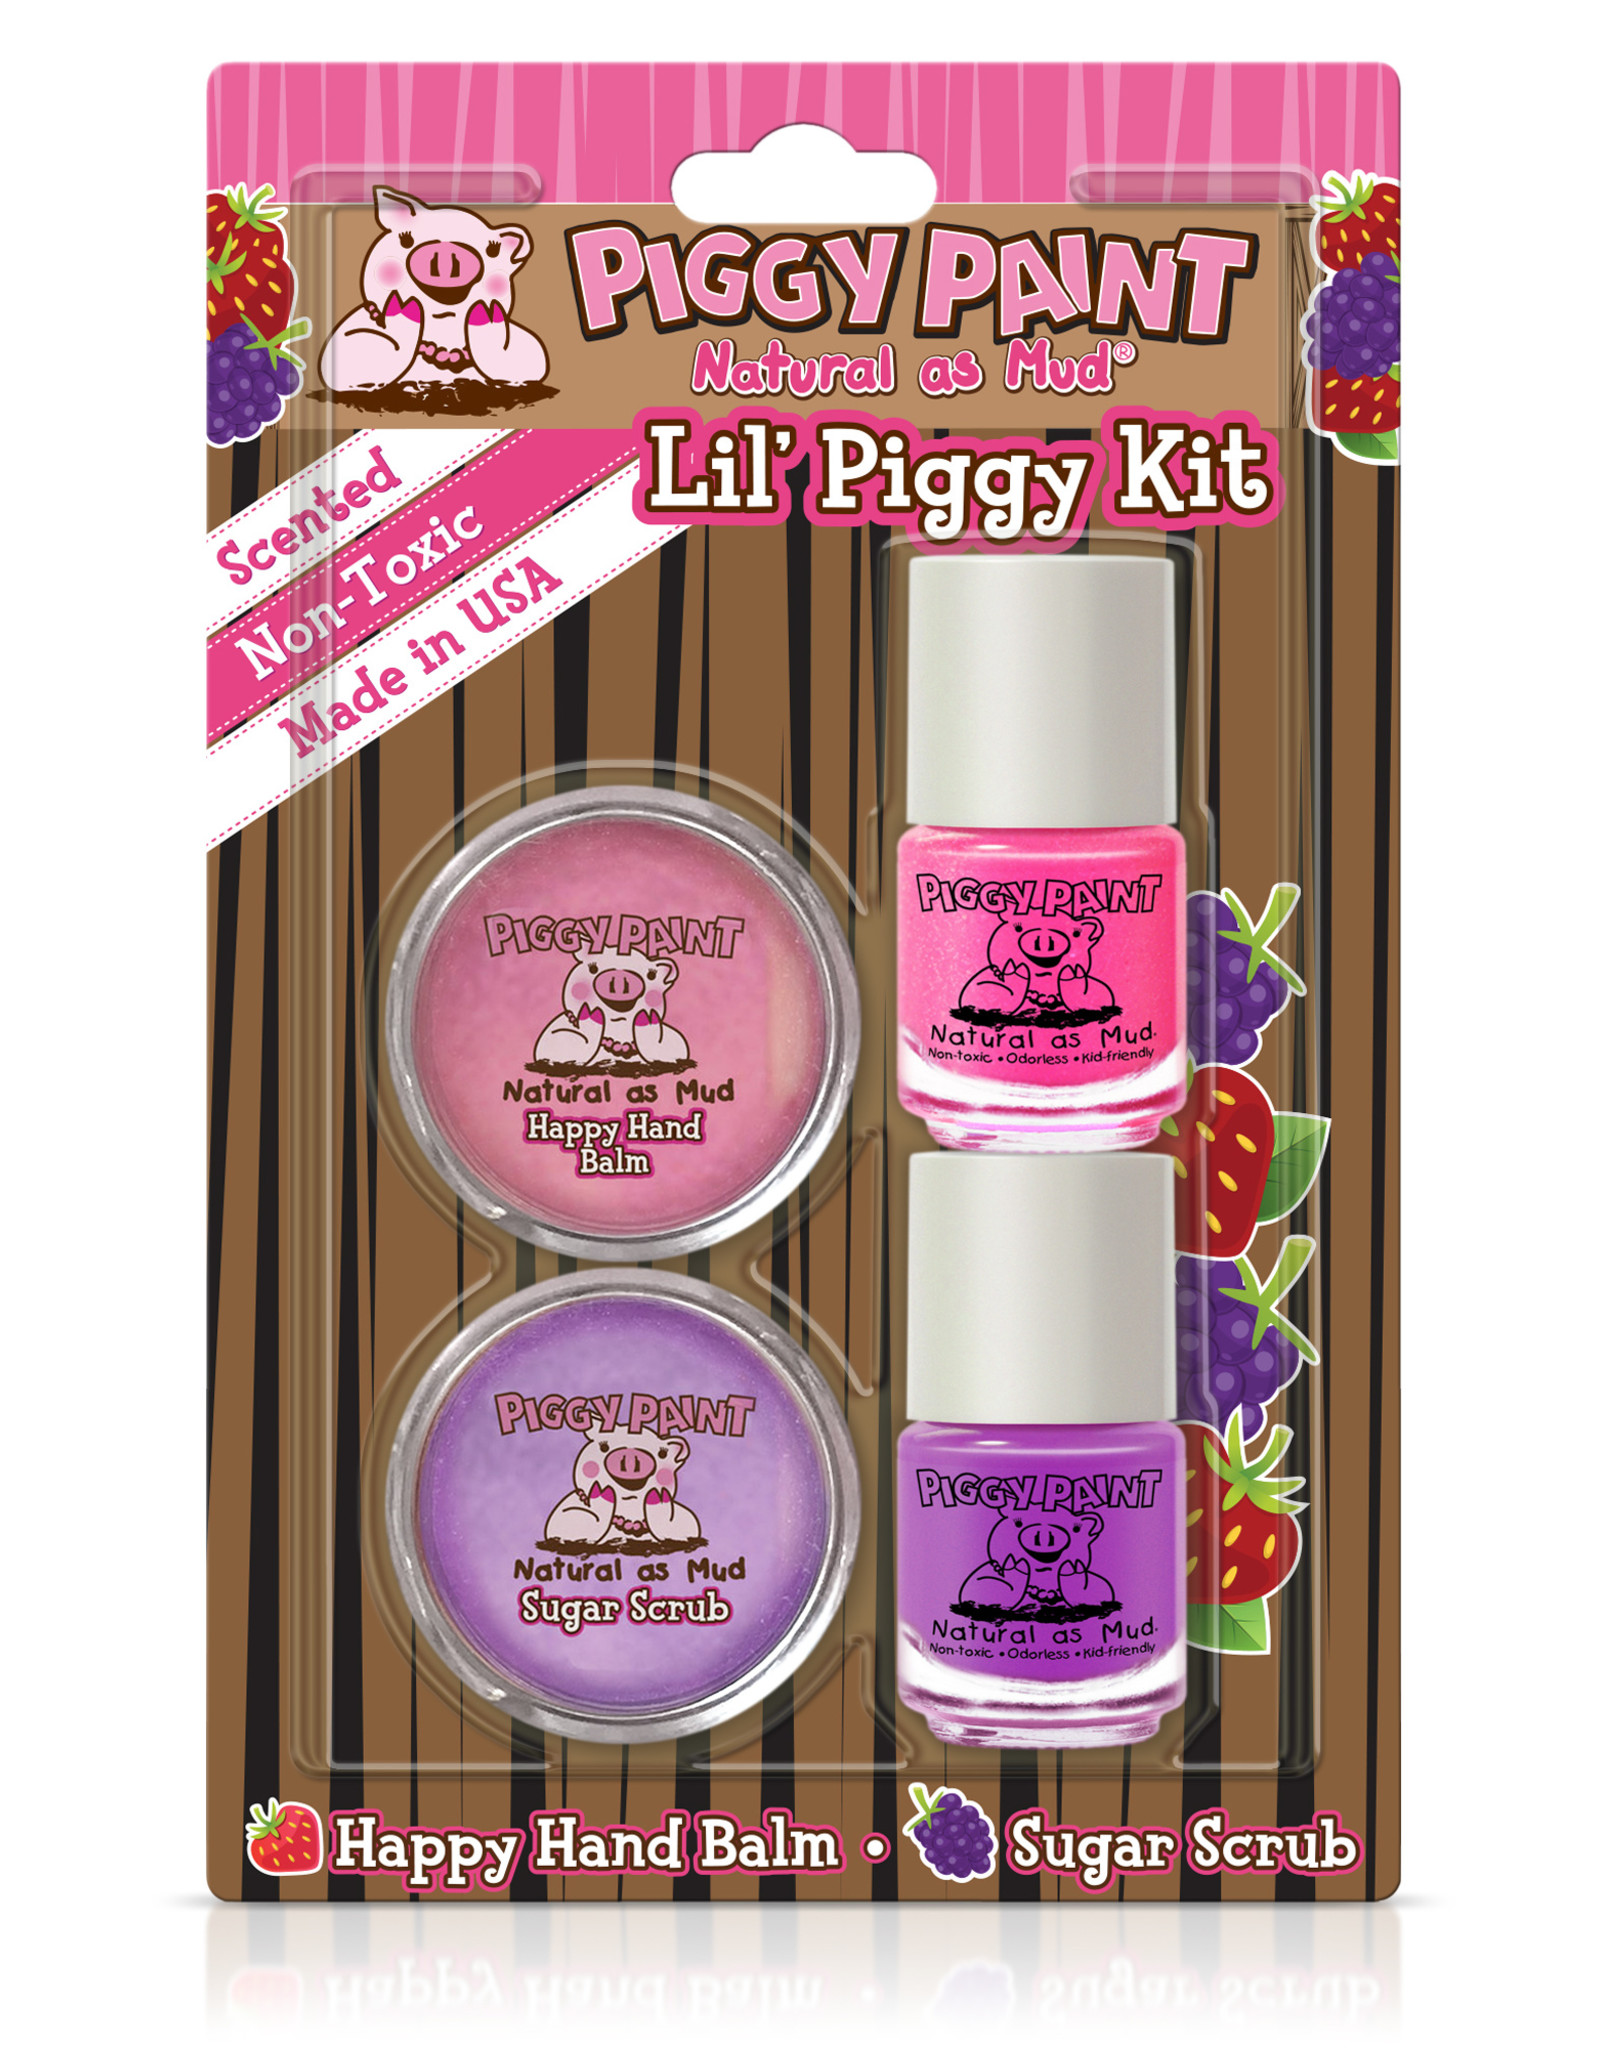 Piggy Paint lil piggy kit